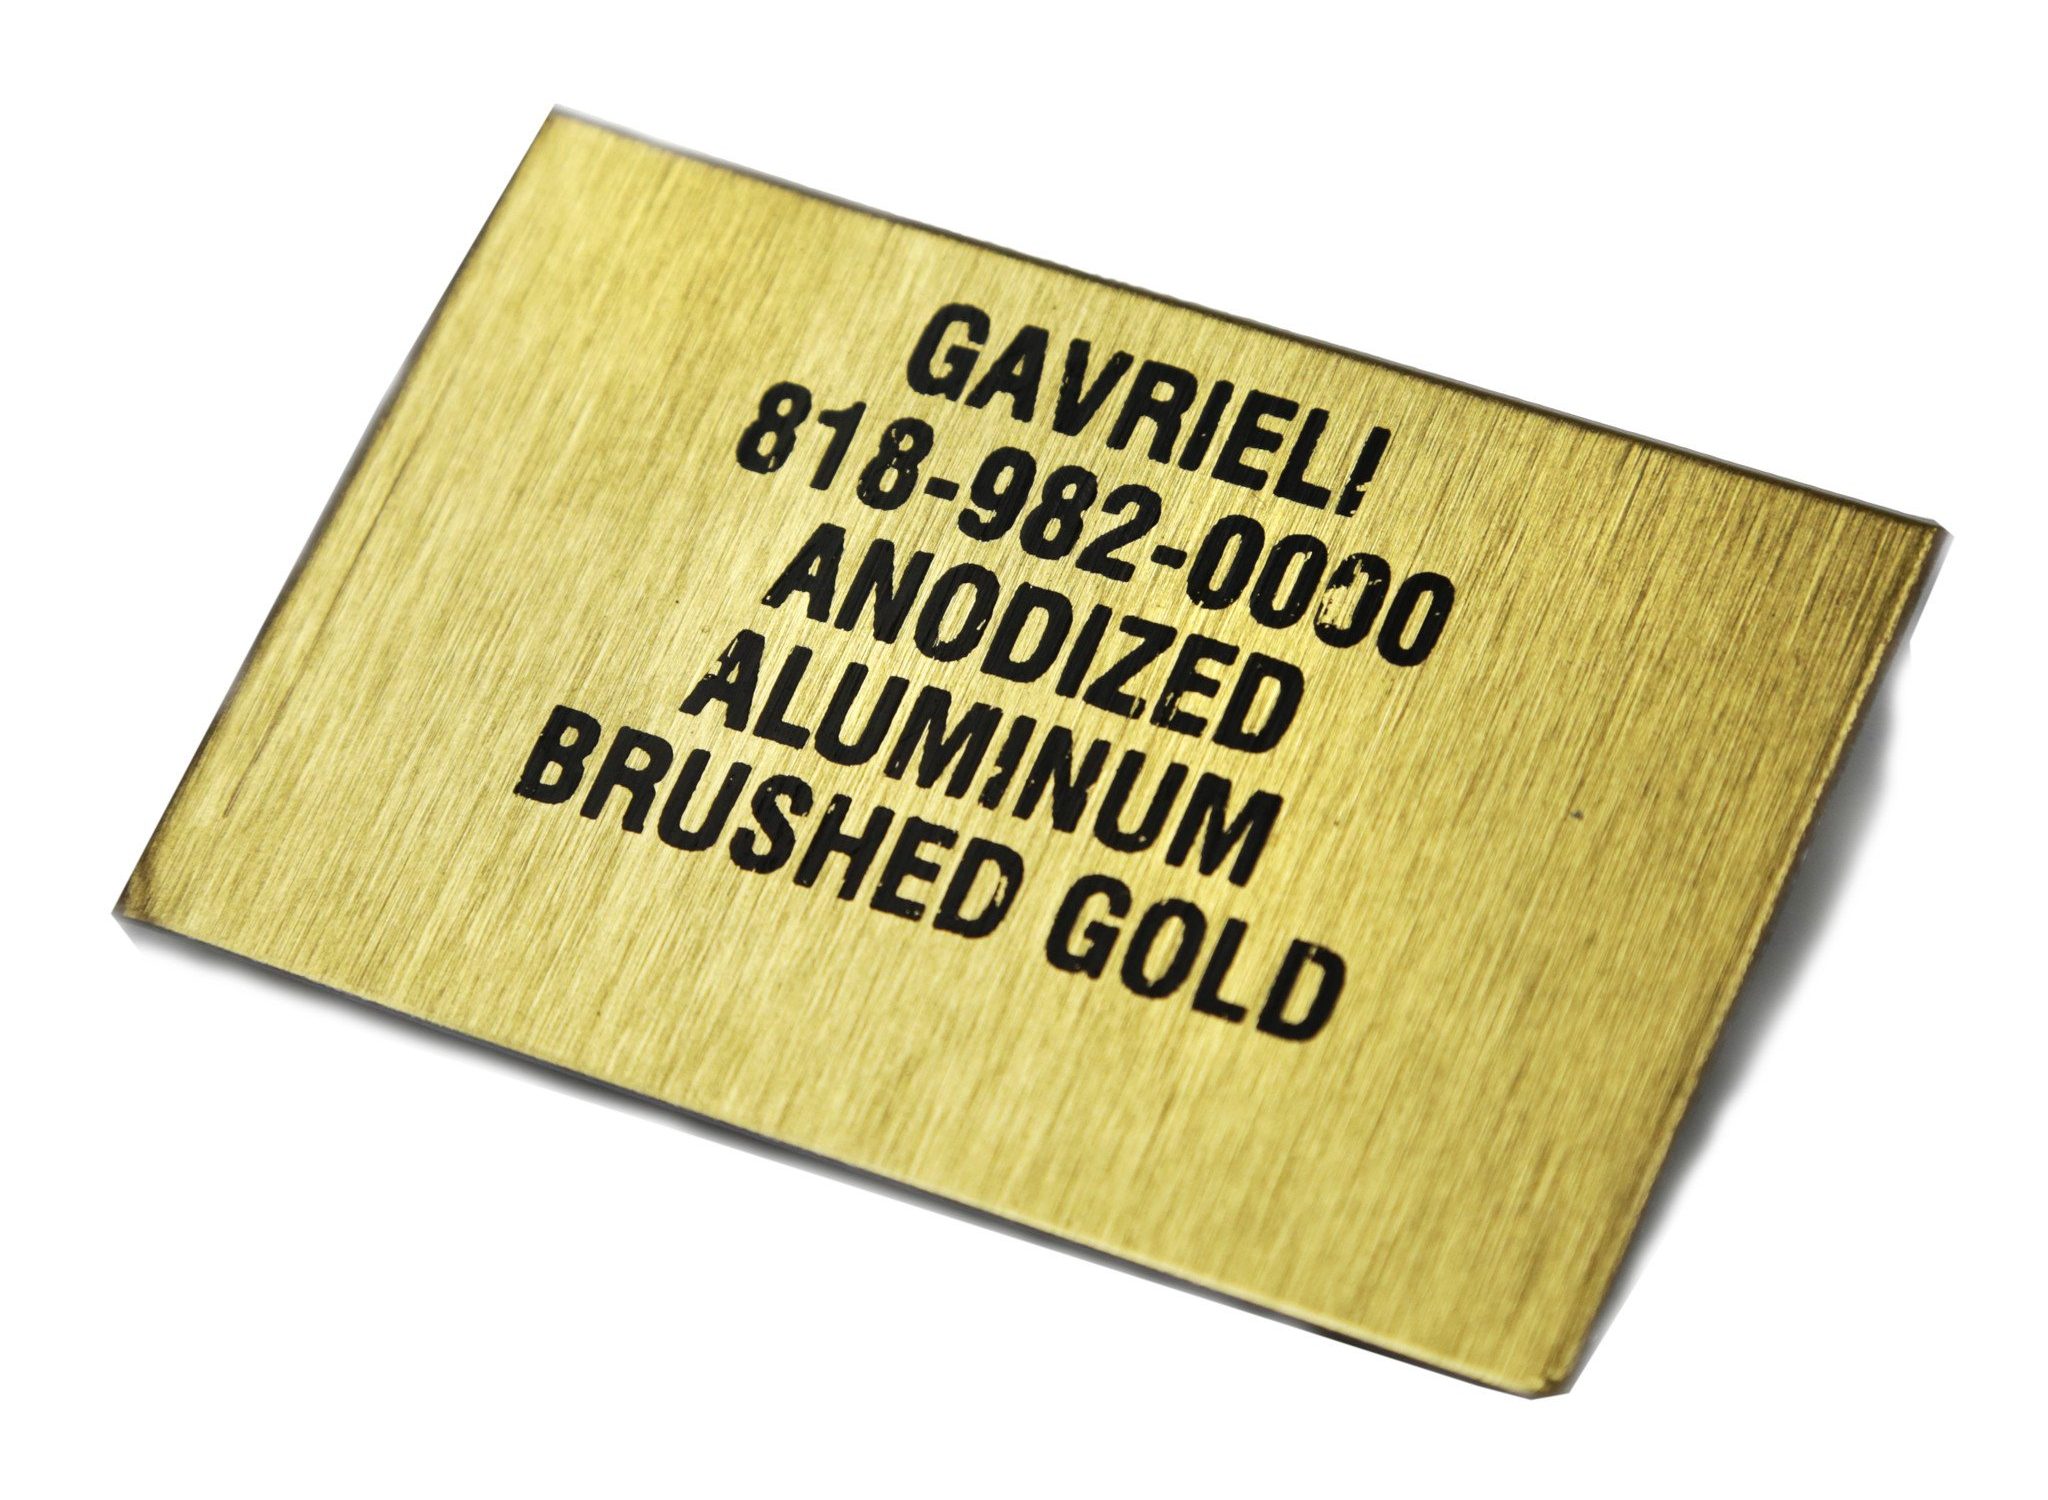 Anodized Aluminum Brush Gold